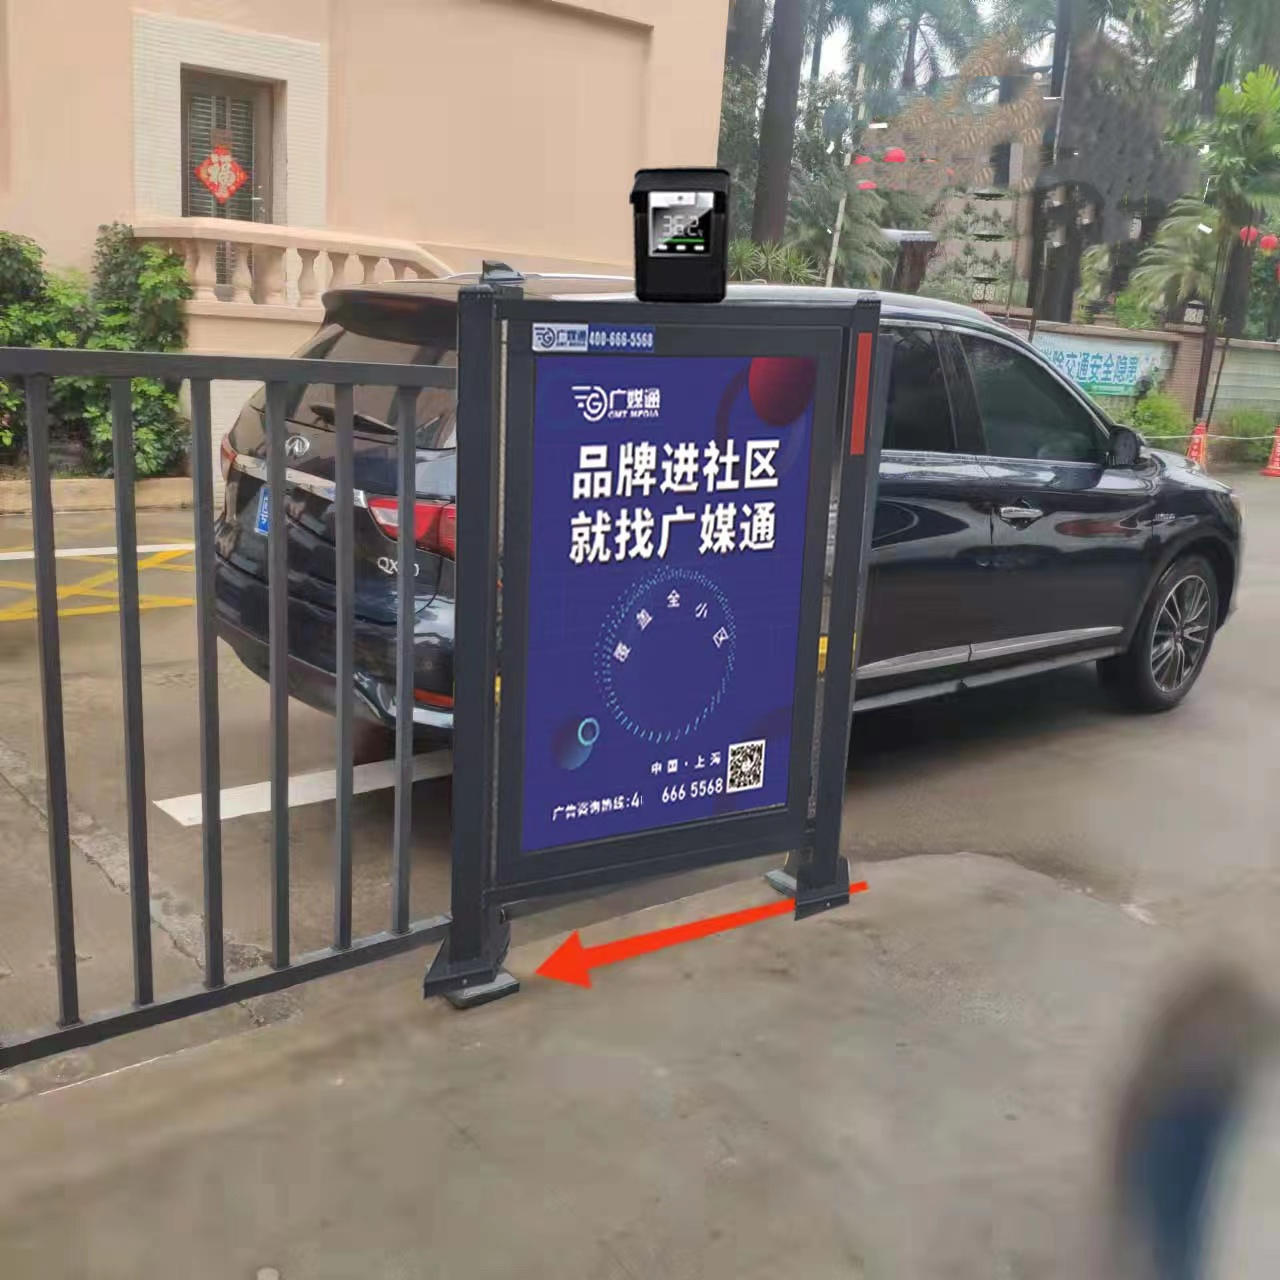 南京燈箱廣告小區通道燈箱廣告發布就選廣媒通